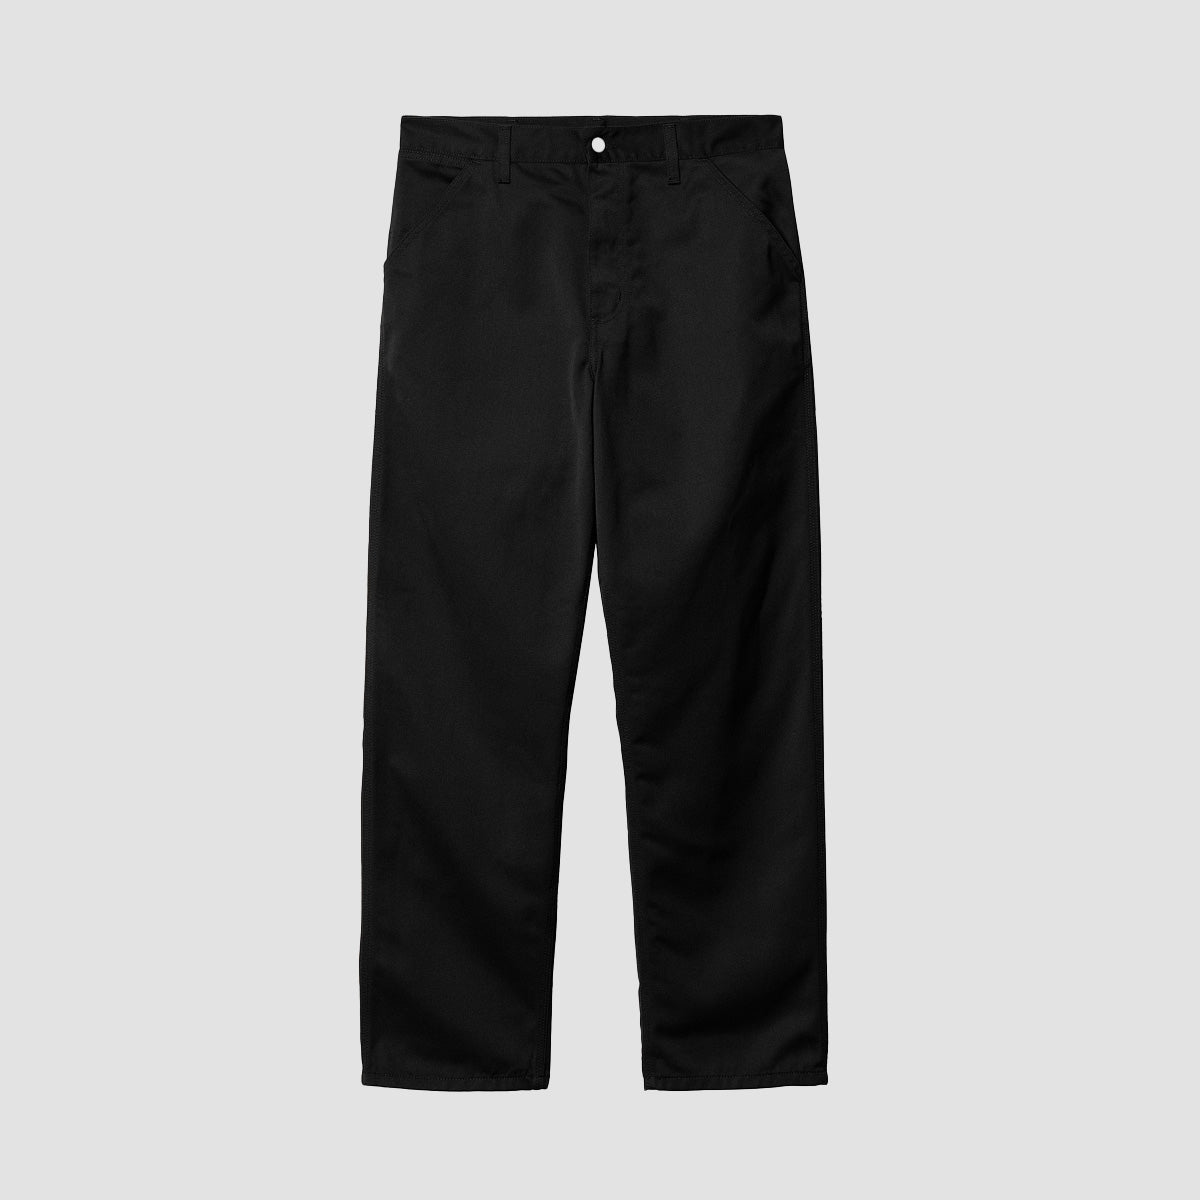 Carhartt WIP Simple Pants Black Rinsed